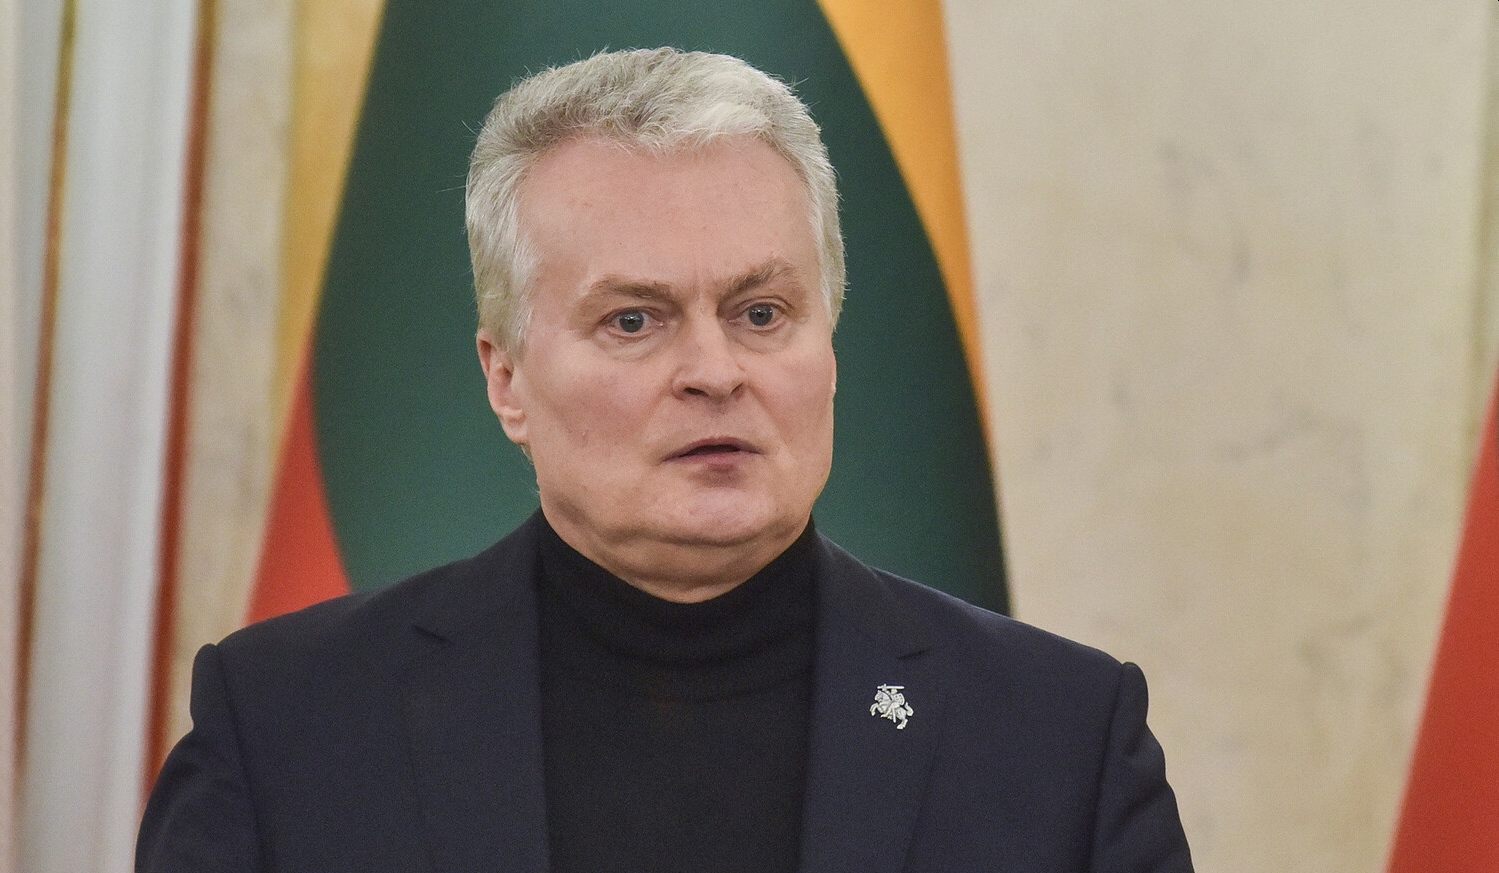 Науседа лидирует с 85% голосов во втором туре президентских выборов в Литве